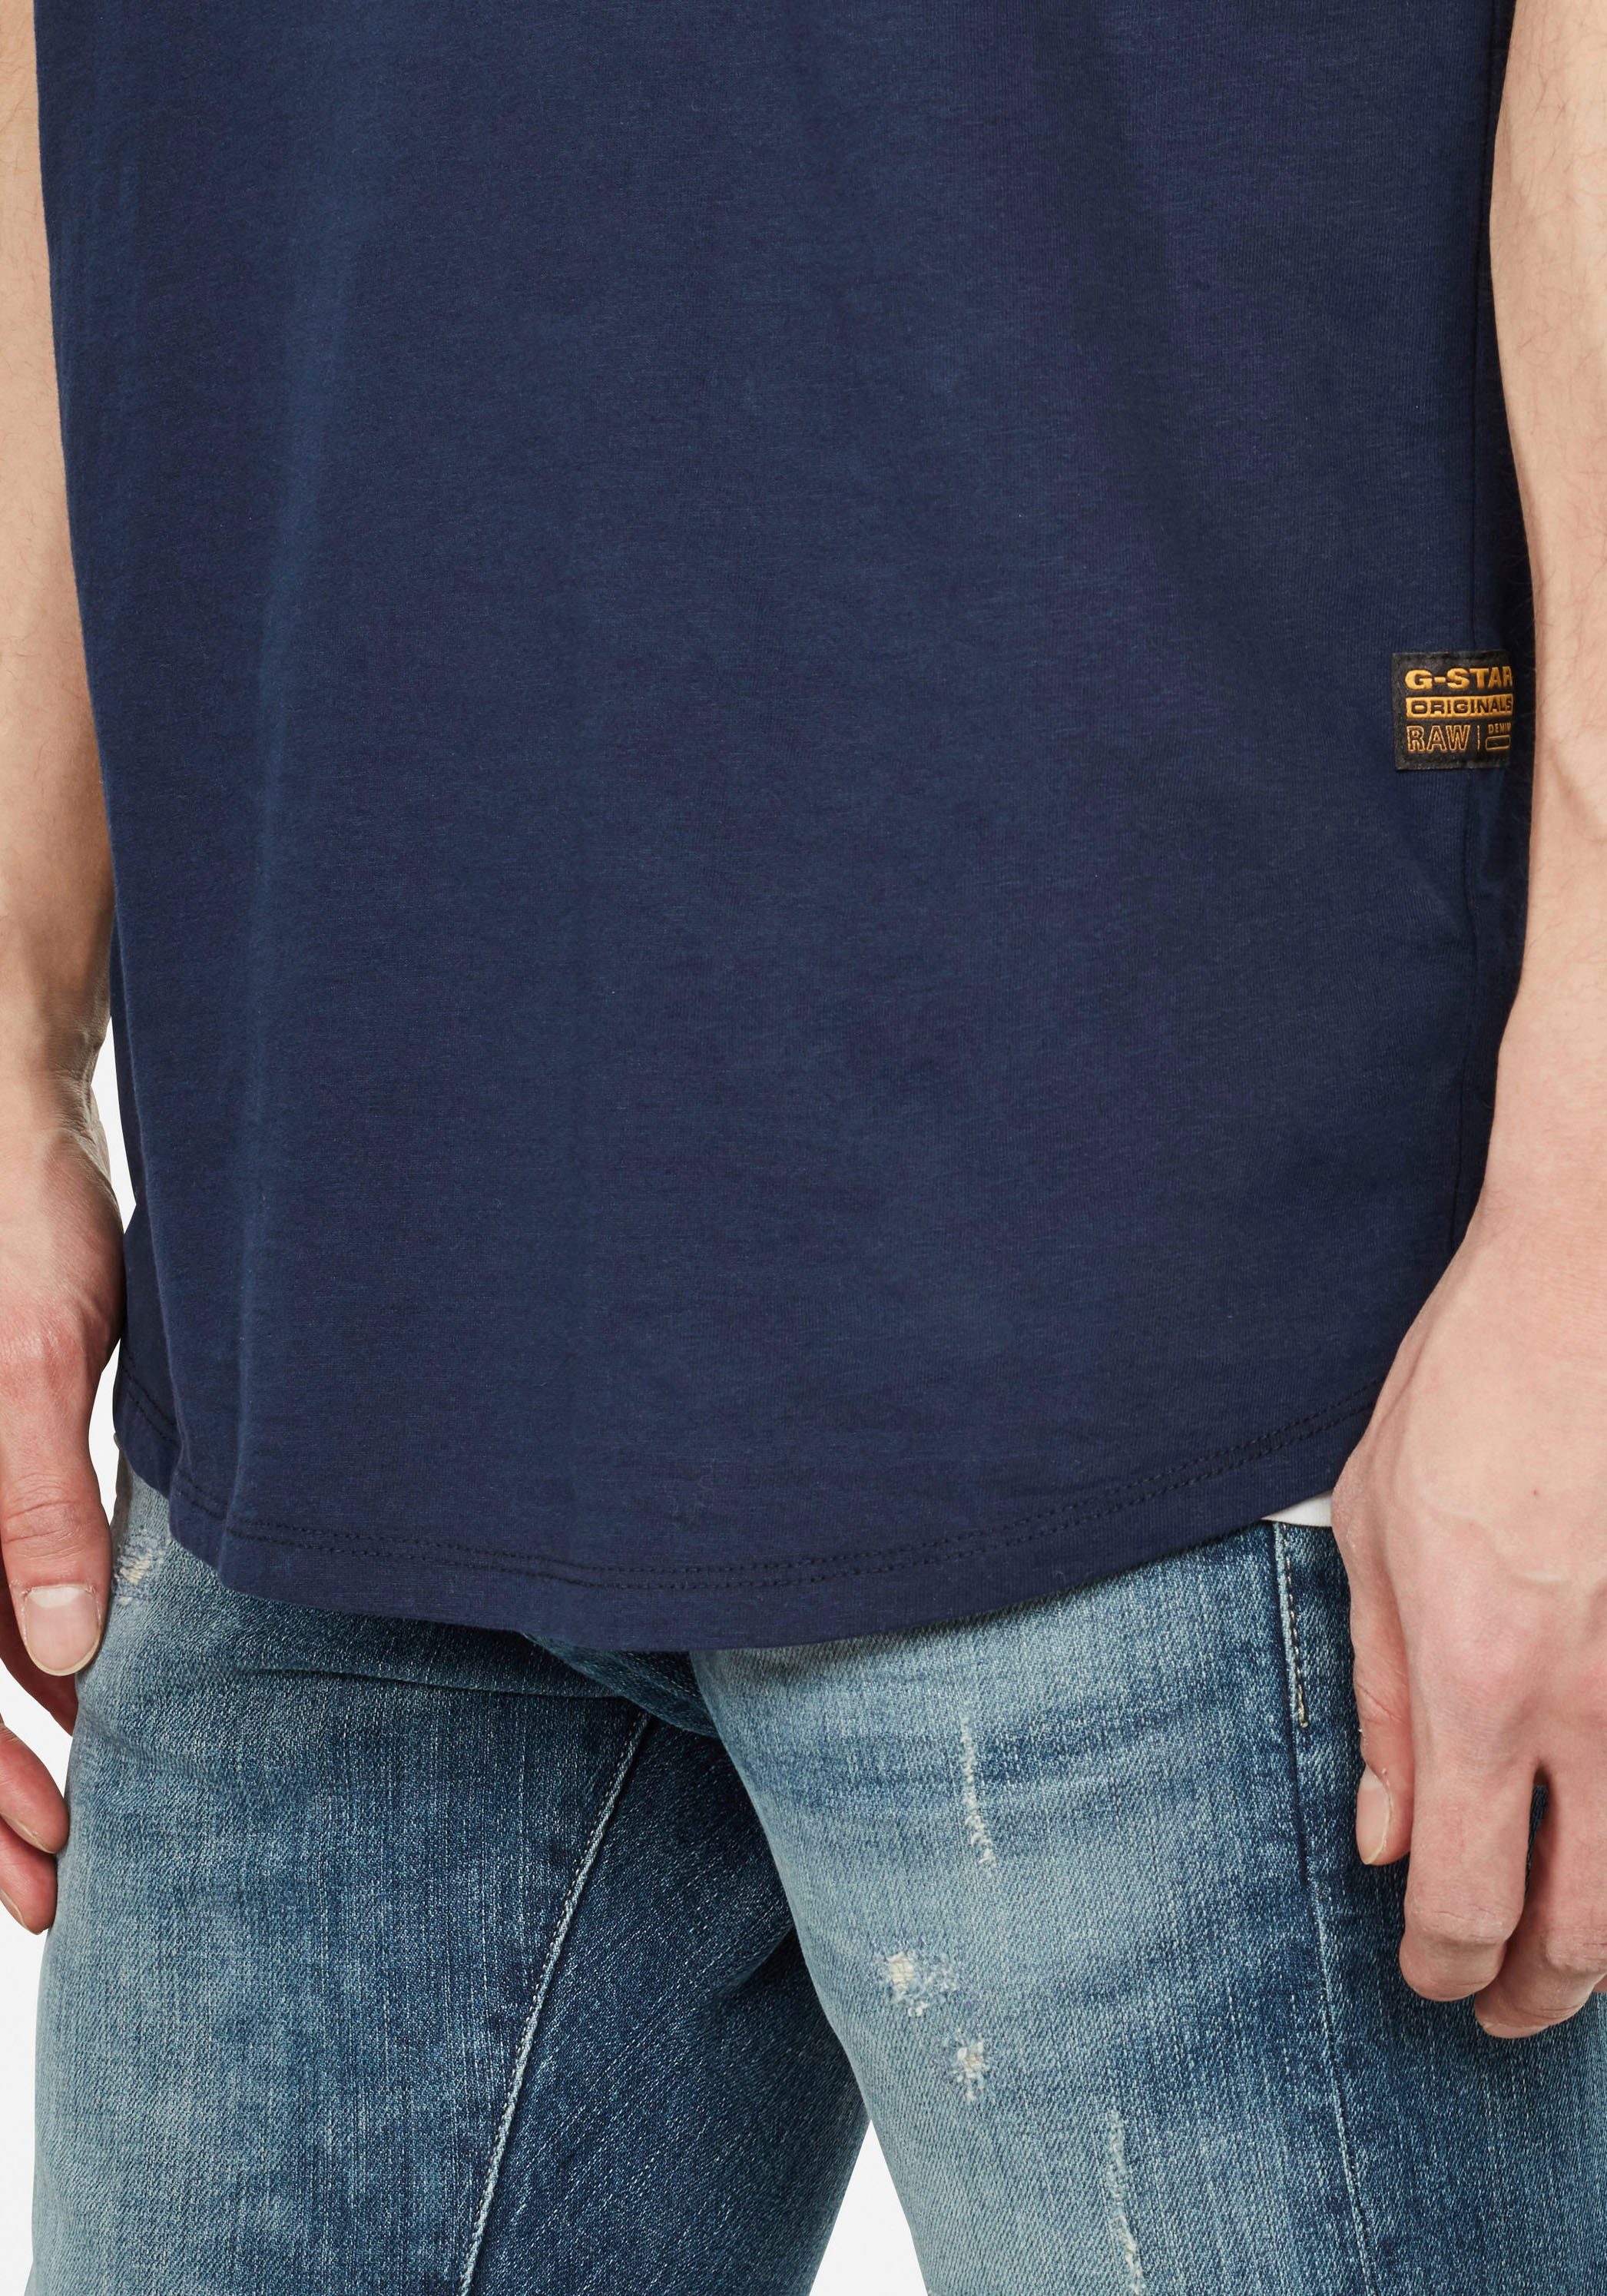 G-Star RAW Logo Lash kleinem mit Stitching navy-meliert T-Shirt